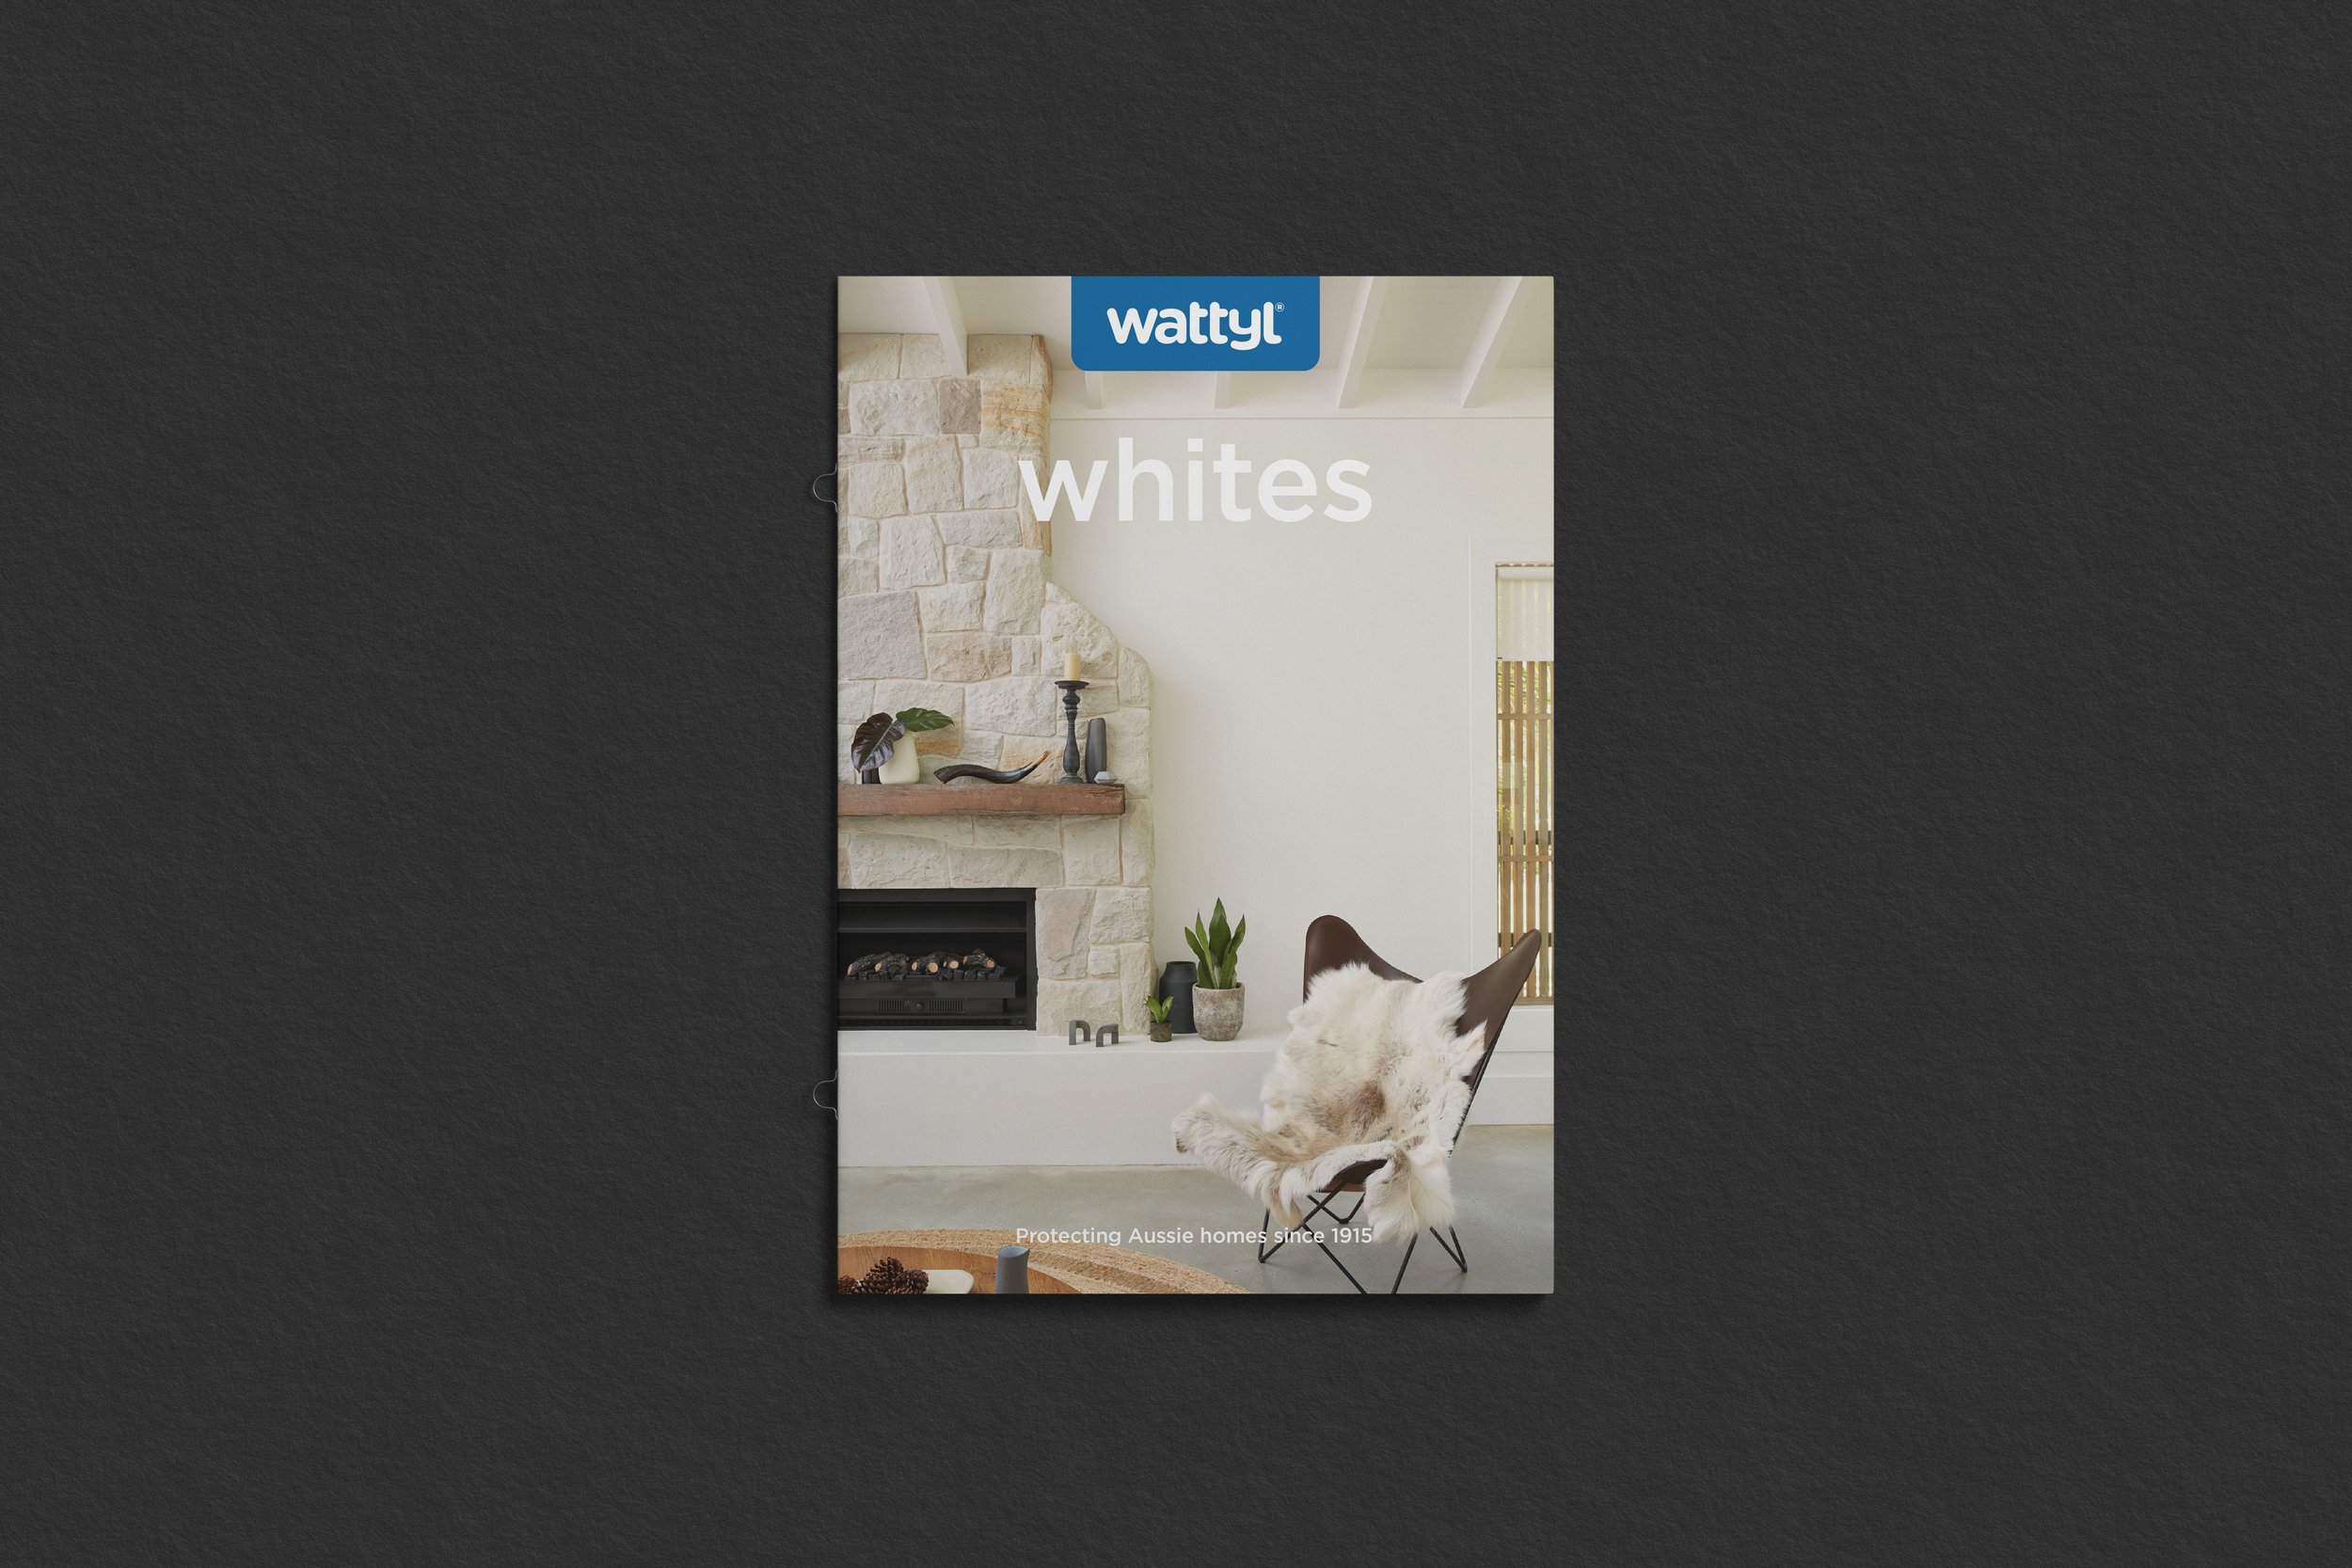 wattyl-whites-cover.jpg